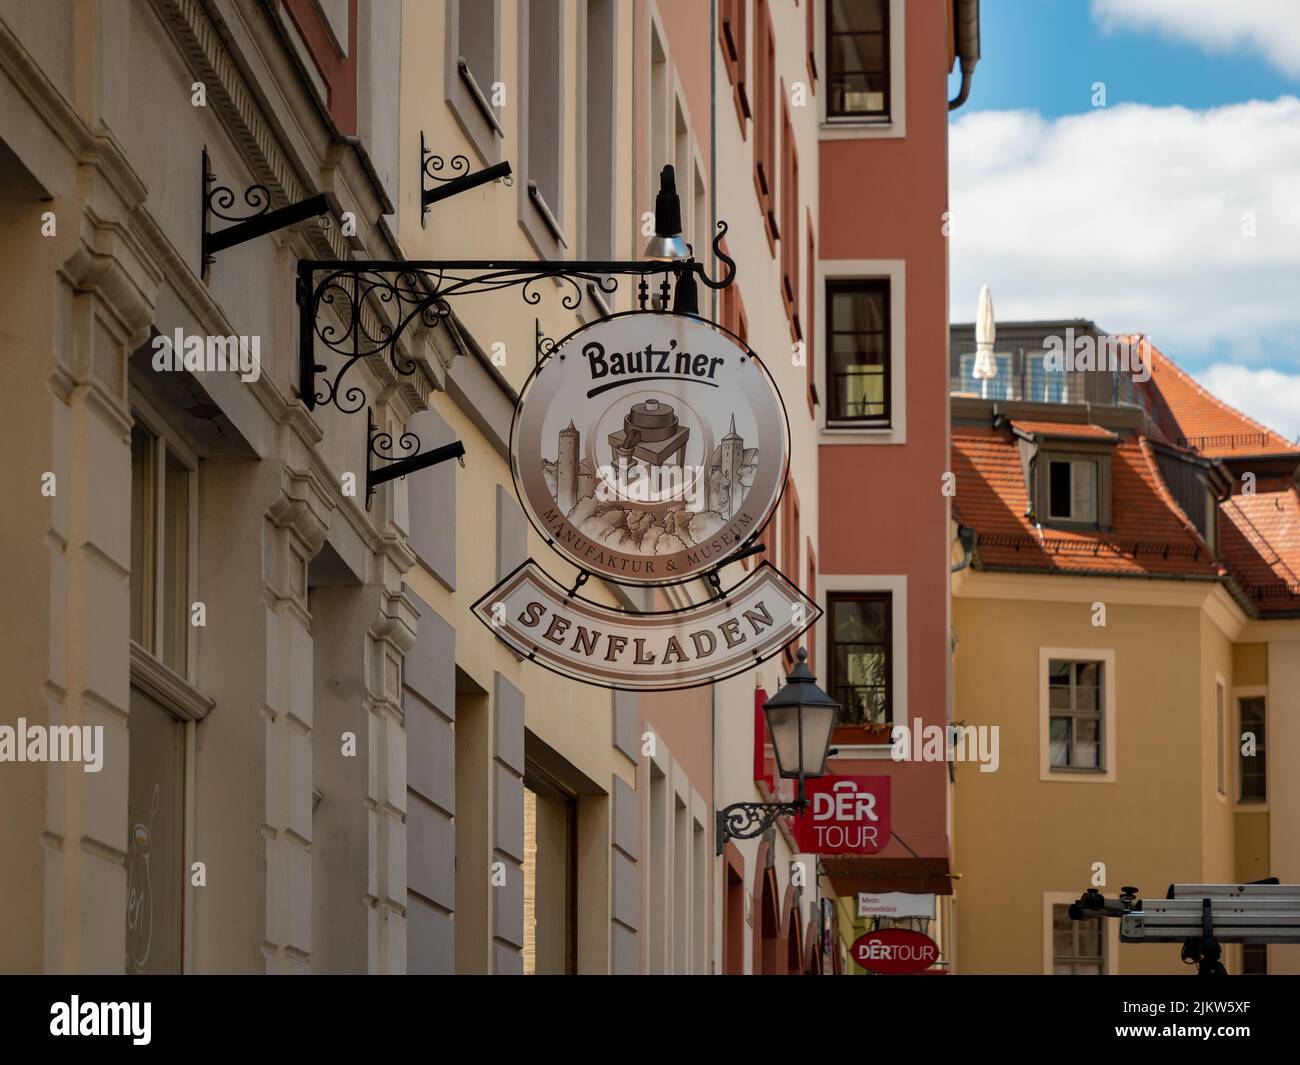 Panneau du musée Bautz'ner Senfladen et boutique à l'extérieur du bâtiment. Guide du magasin de moutarde historique de la ville de Bautzen. Banque D'Images